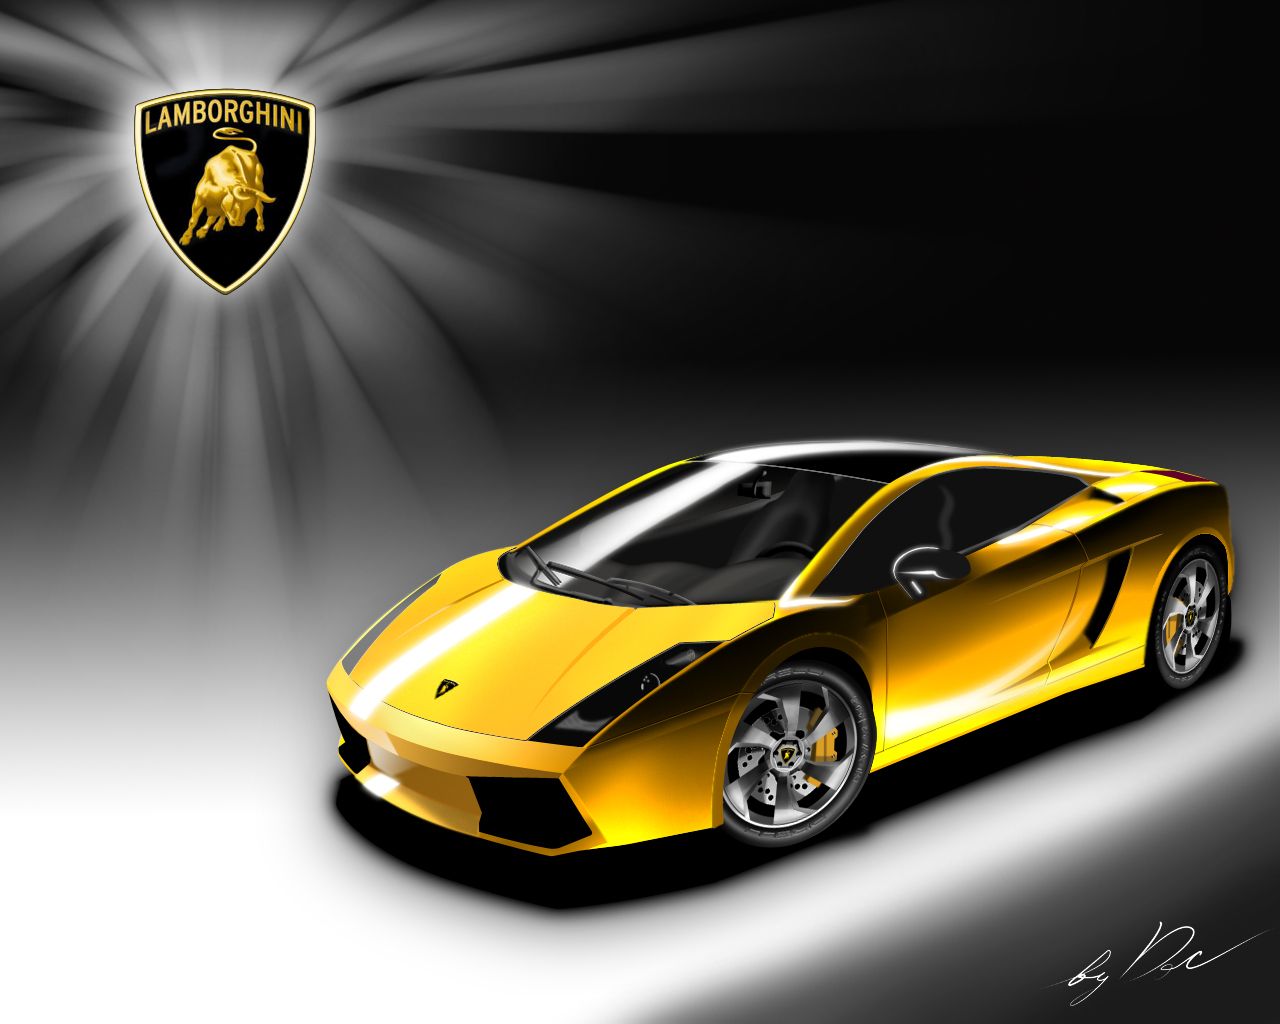 Wallpaper of Lamborghini Cars